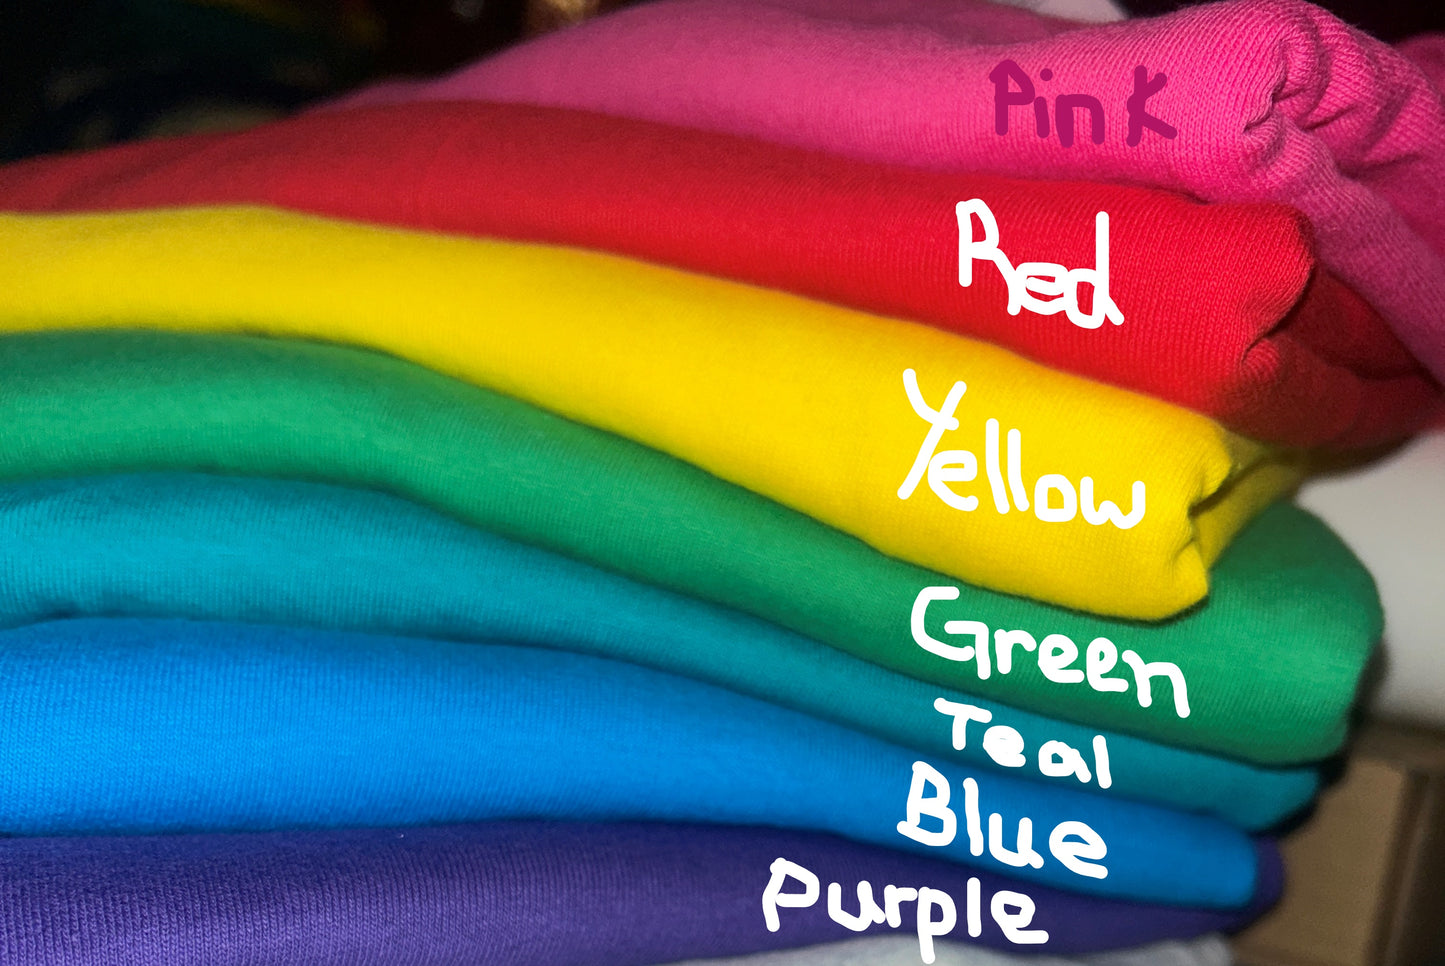 Aware End the Stigma T-shirt #1- Bright colors/ white design